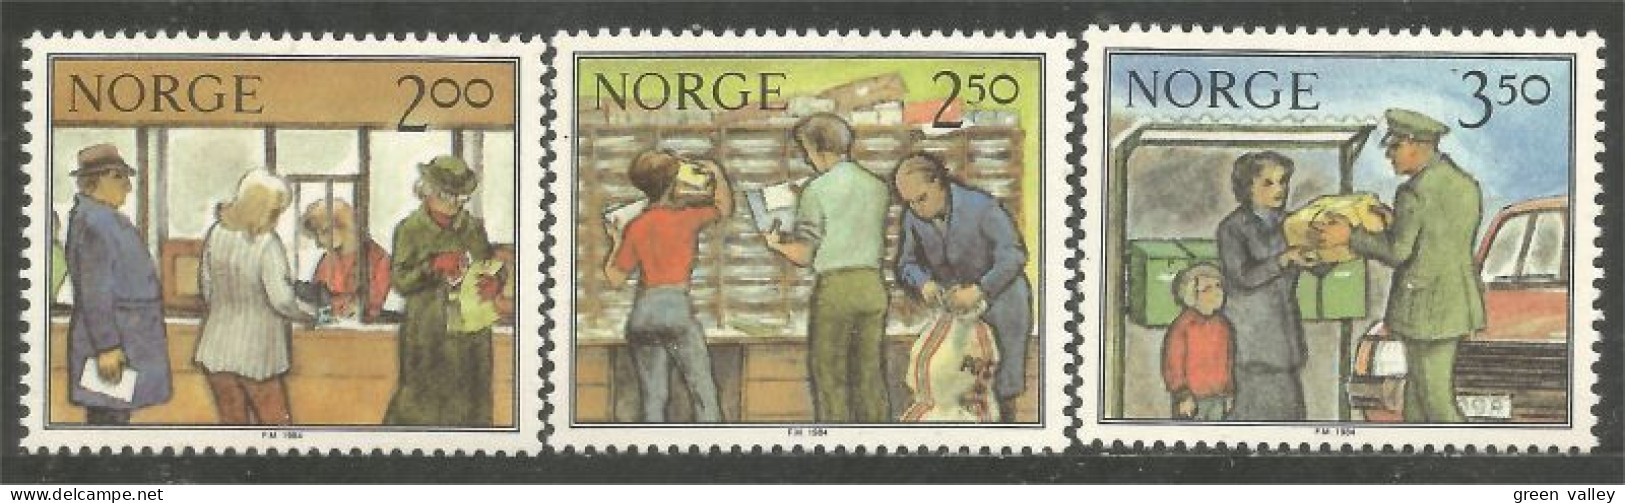 690 Norway Postal Services Poste MNH ** Neuf SC (NOR-295) - Ungebraucht